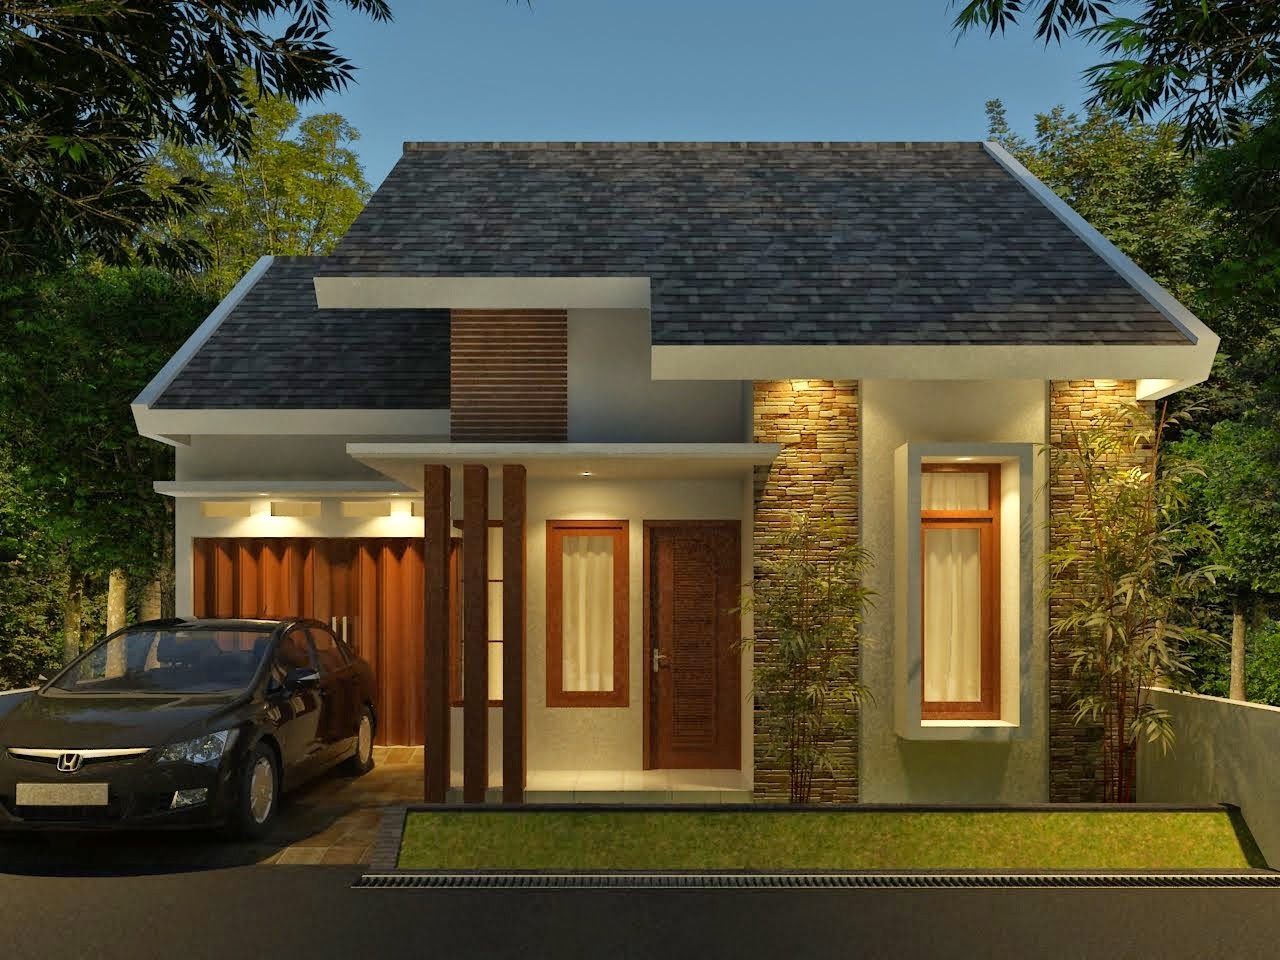 Desain Rumah Minimalis satu lantai 2015 | Gambar Model Rumah Sederhana